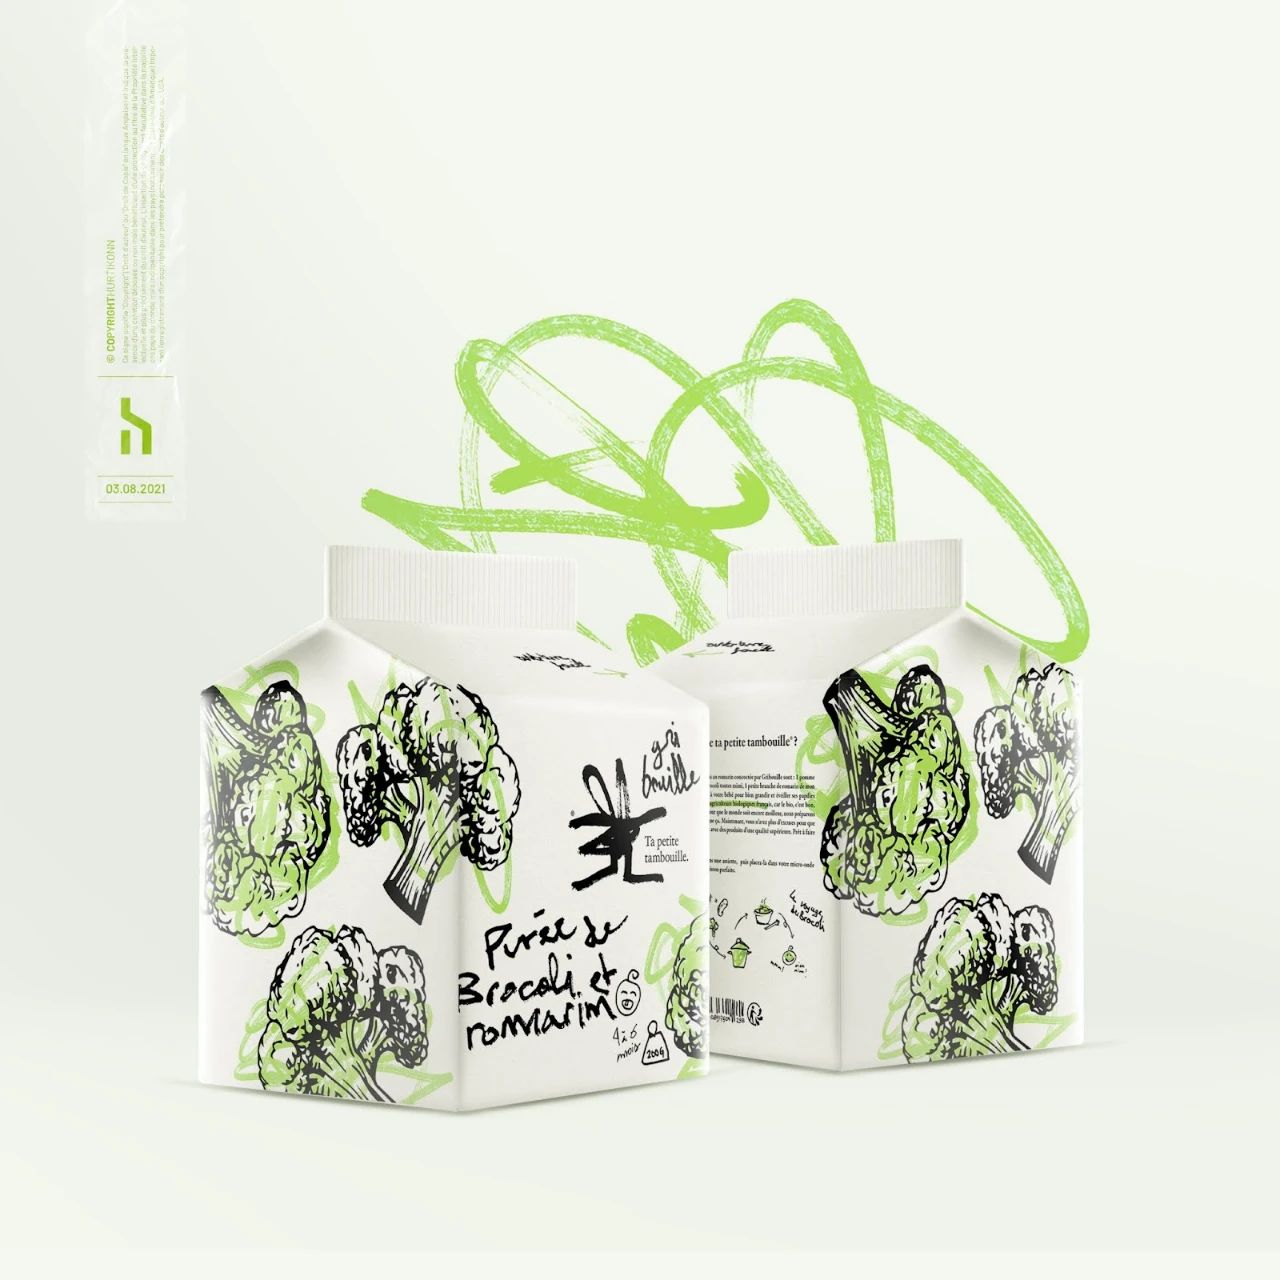 Gribouille儿童食品品牌设计包装设计涂鸦